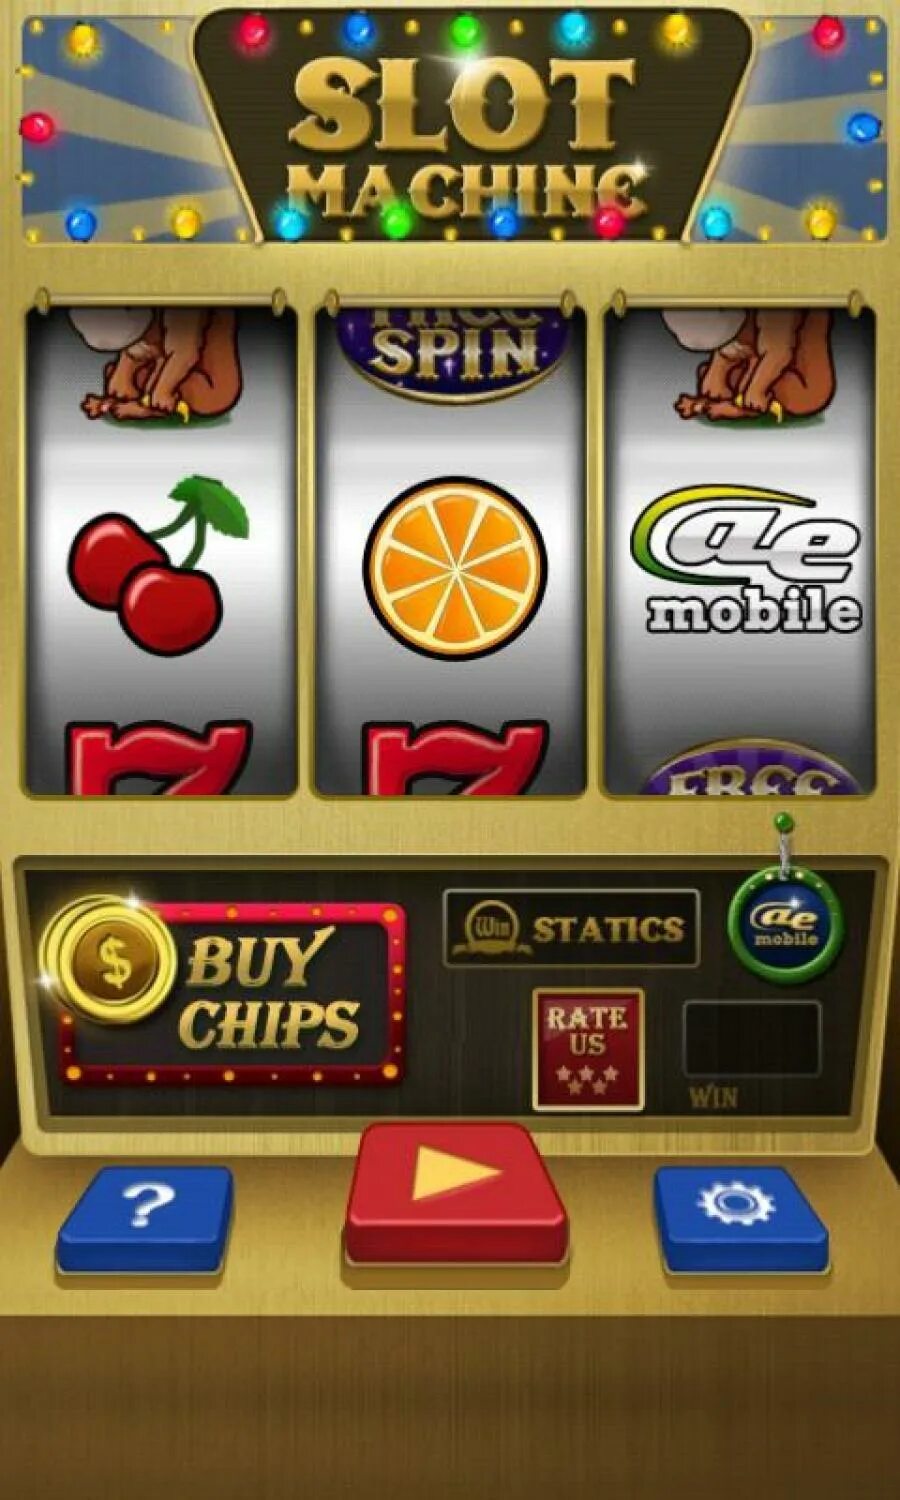 А мобильный телефон игровые автоматы на деньги. Игровой автомат казино. Игровые автоматы на деньги. Игровые аппараты слоты. Игровые автоматы слоты на деньги.